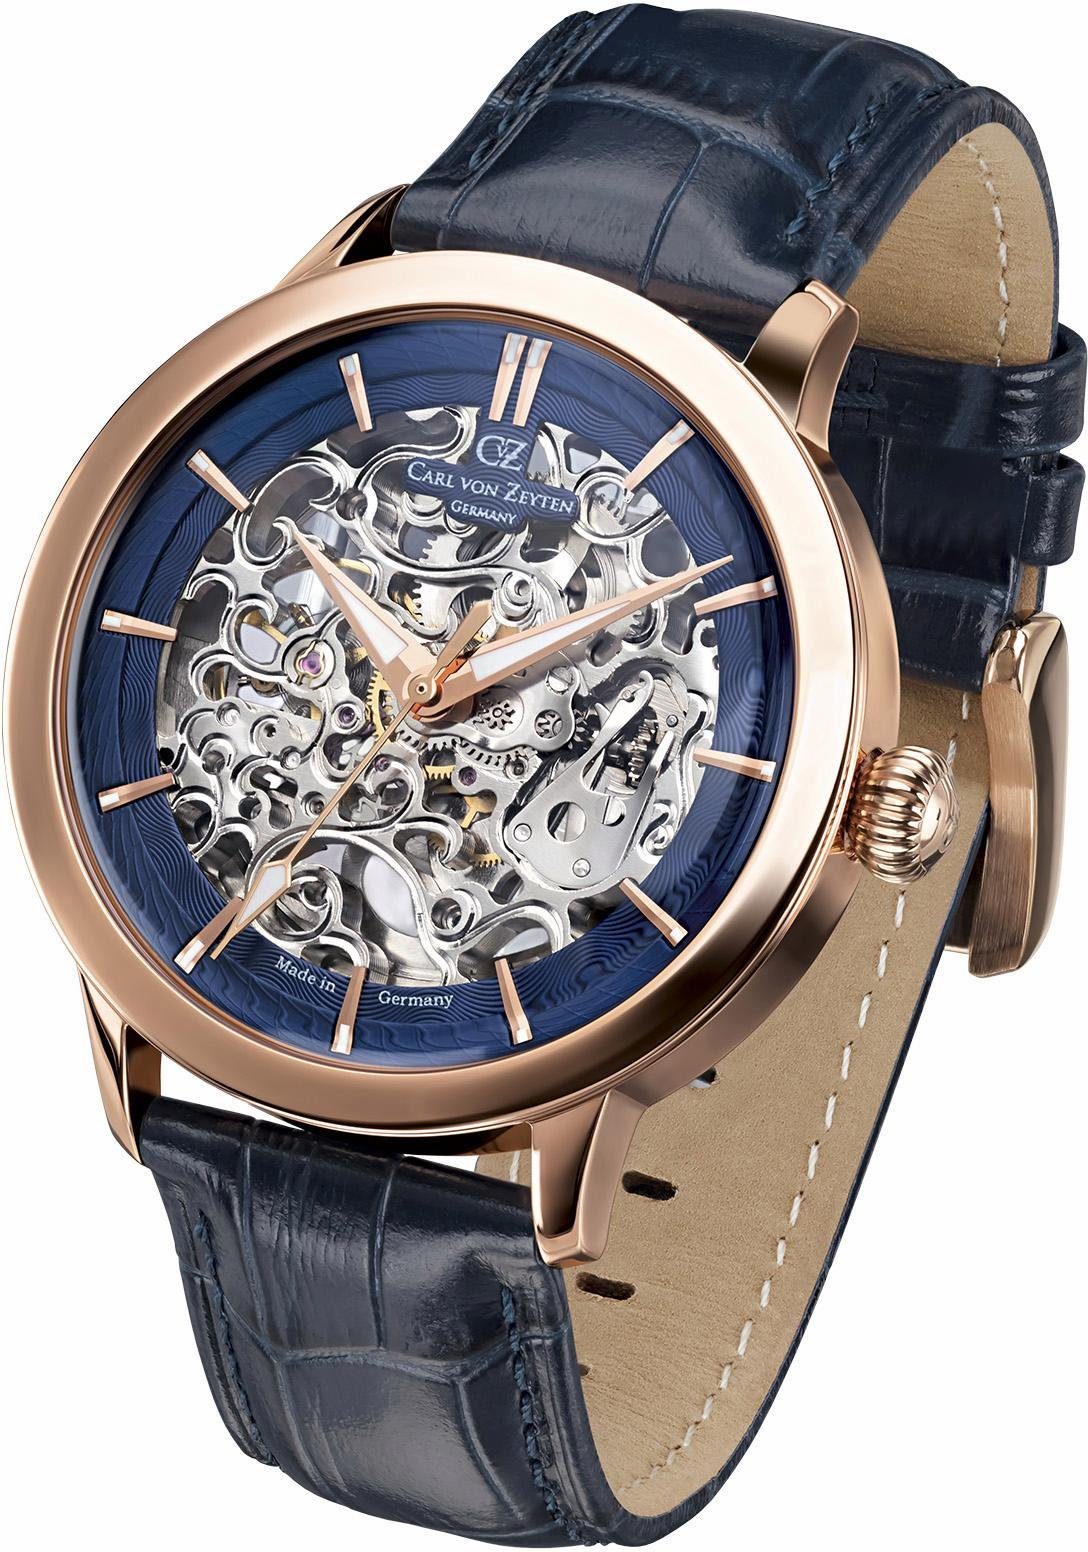 Carl von Zeyten Automatikuhr Triberg, CVZ0013RBL, Armbanduhr, Herrenuhr, Made in Germany, Mechanische Uhr